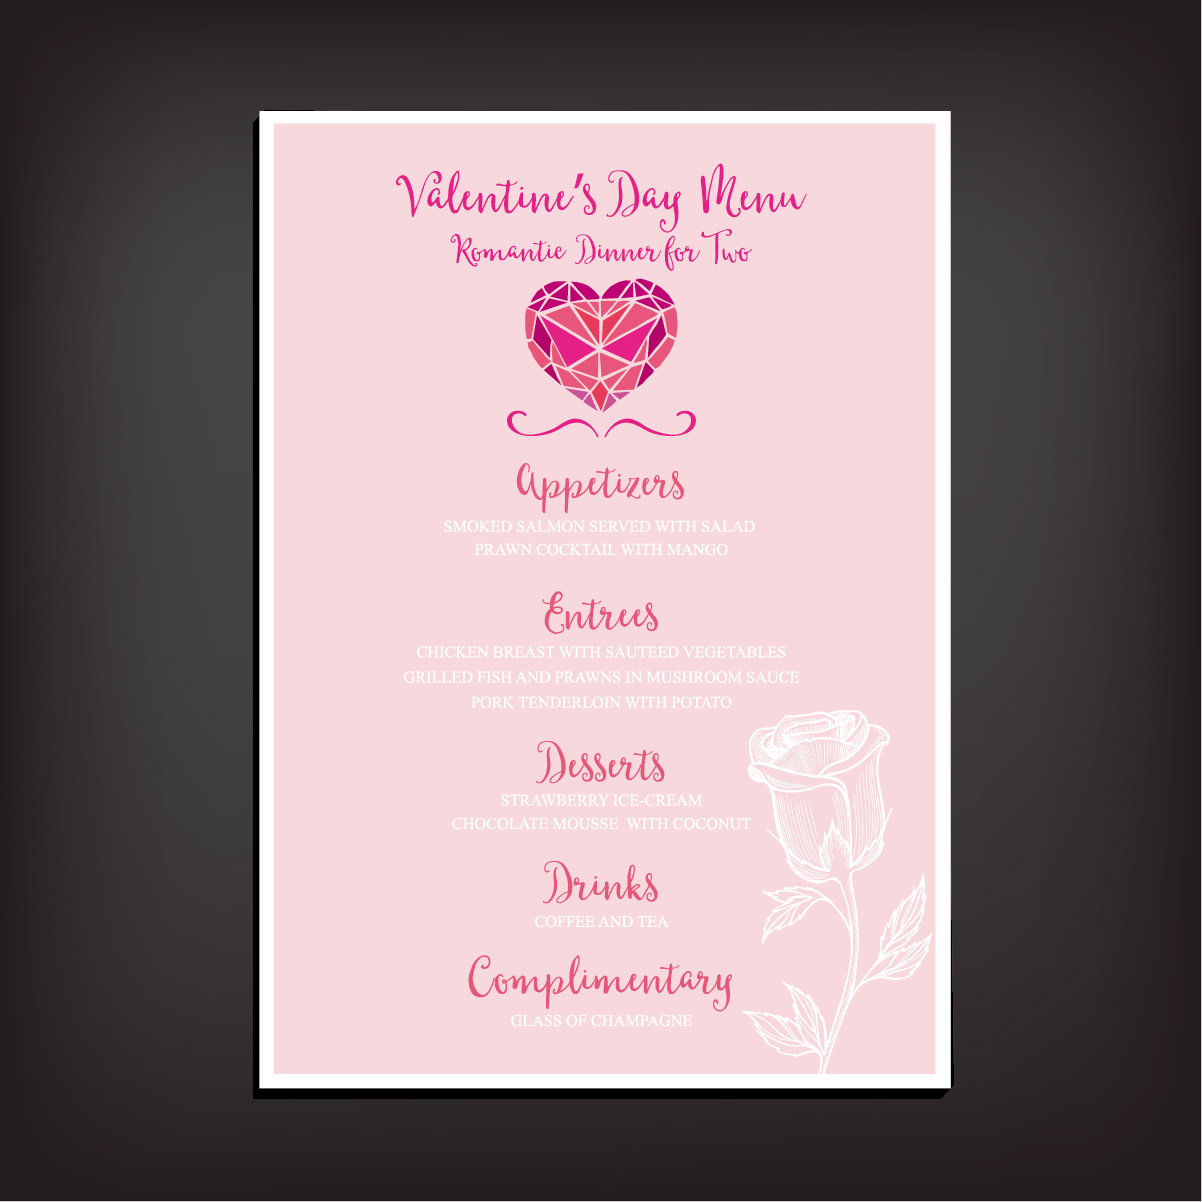 Valentines day restaurant menu vintage vector 02